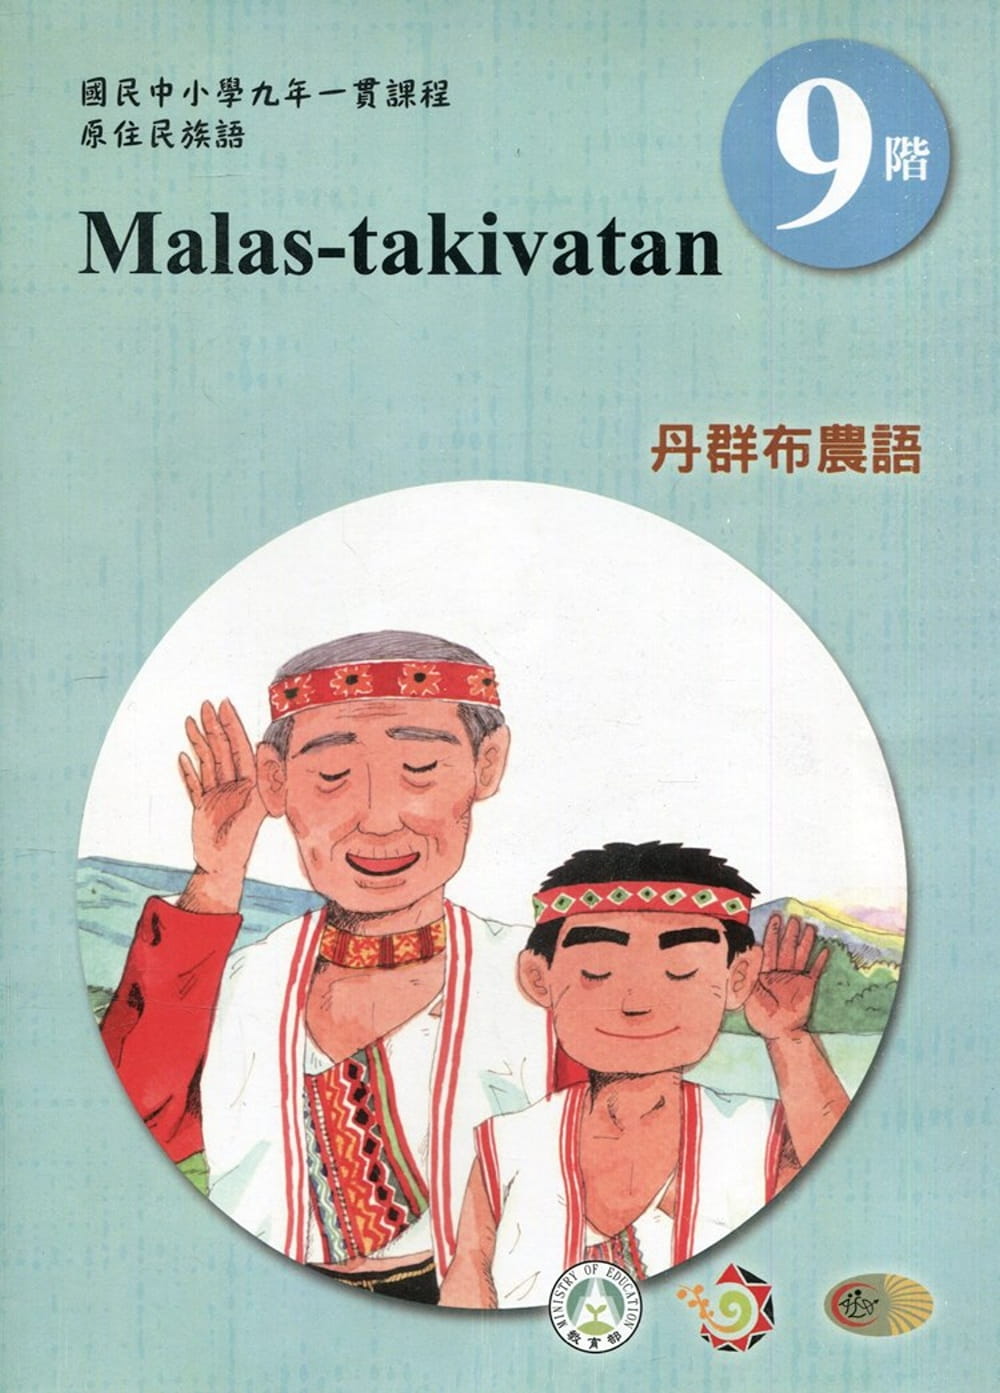 原住民族語丹群布農語第九階學習手冊(附光碟)2版